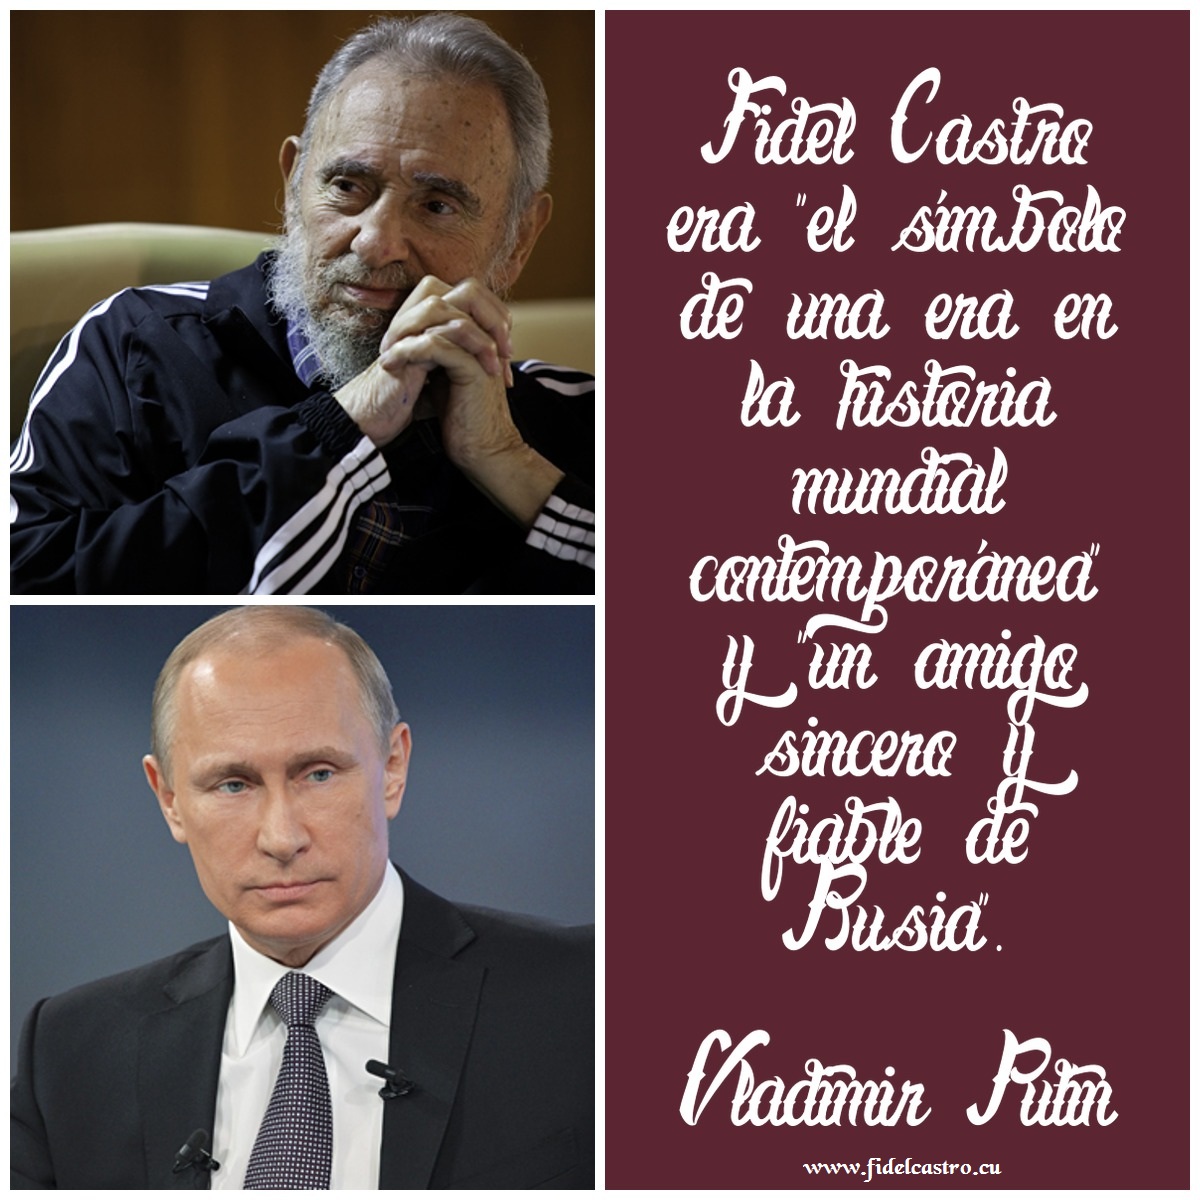 ✍️Vladimir Putín: #FidelCastro era “el símbolo de una era en la historia mundial contemporánea” y “un amigo sincero y fiable de Rusia”. 👉bit.ly/2FaItOi #Cuba #Rusia #FidelCastro #Solidaridad